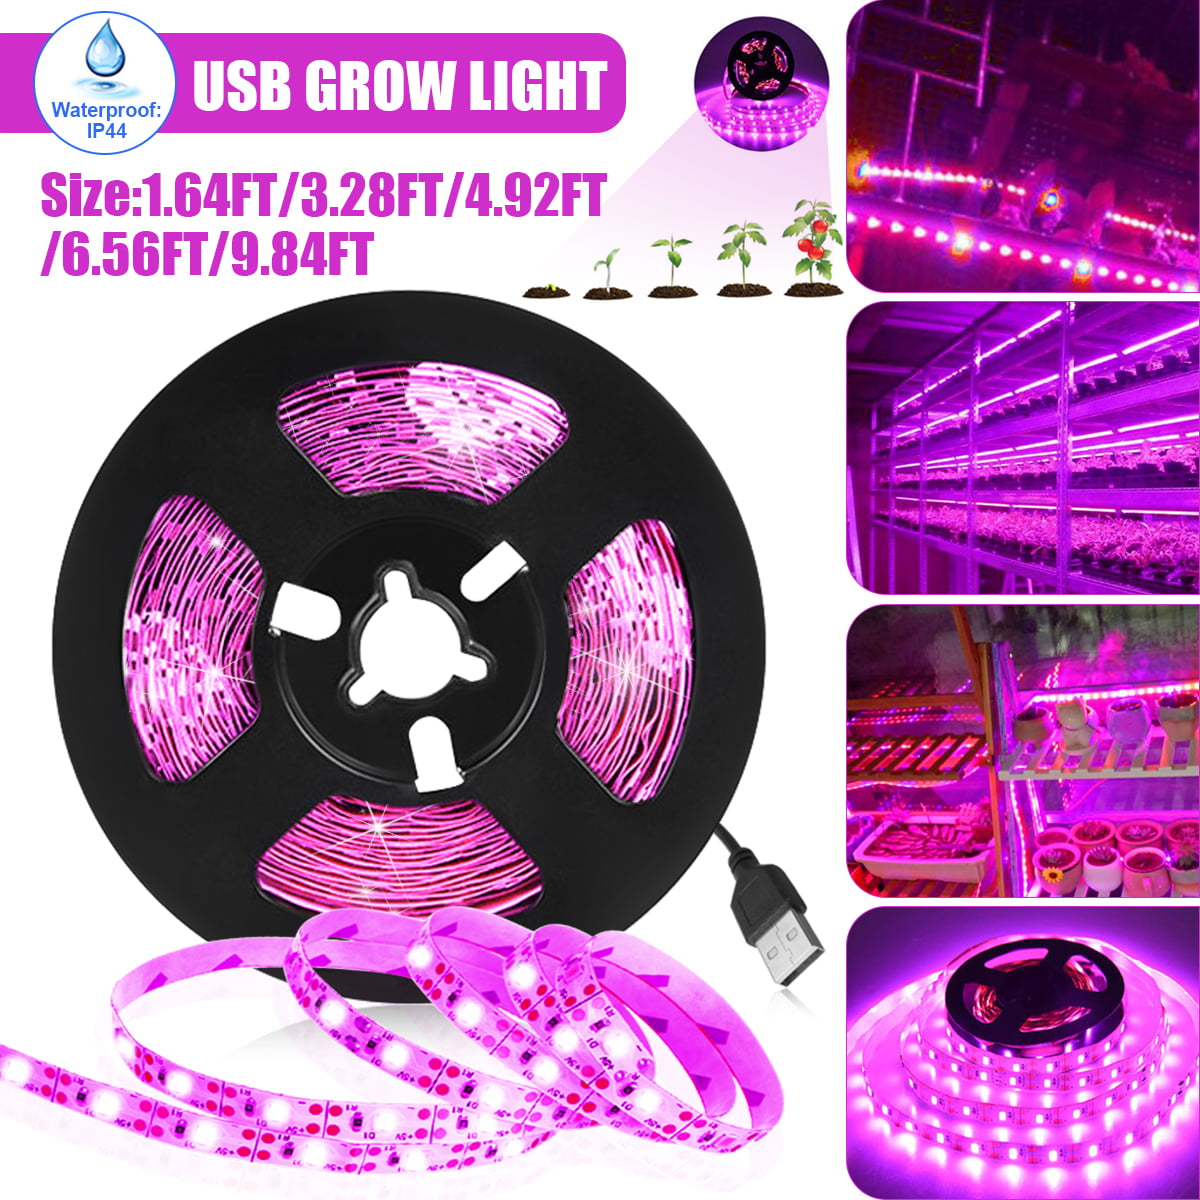 USB LED Grow Light Strip Full Spectrum Strip Indoor Veg Plant Growing Lamp 5V 